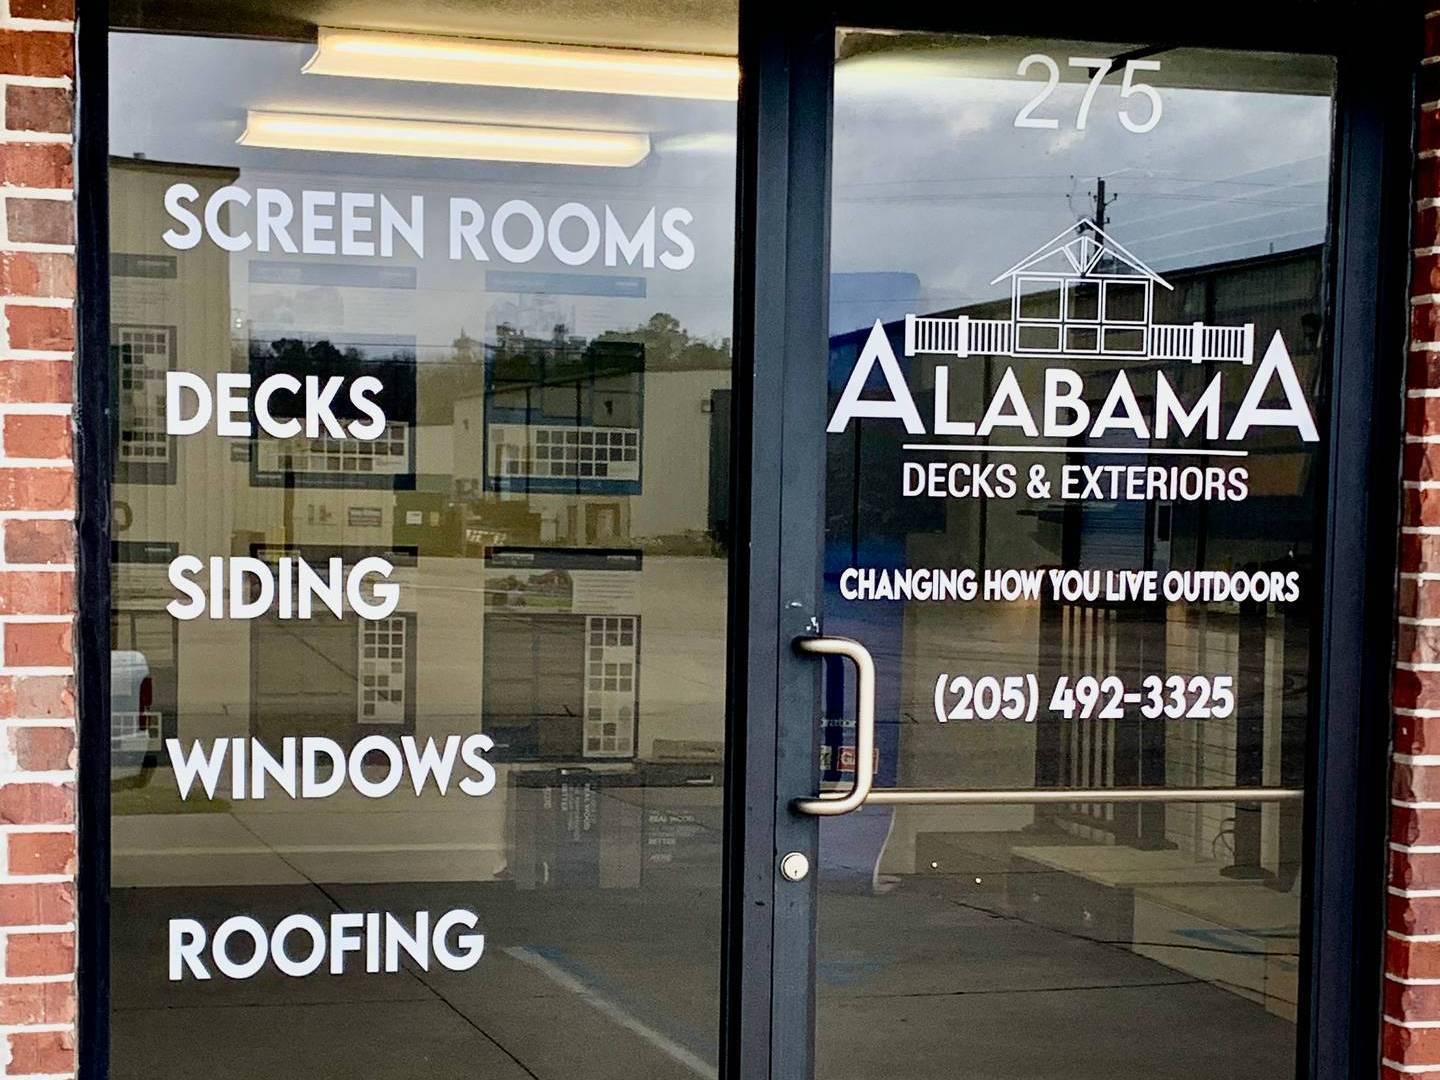 Showroom - Alabama Decks & Exteriors - Decks - Siding - Screenroom - 01_crop43